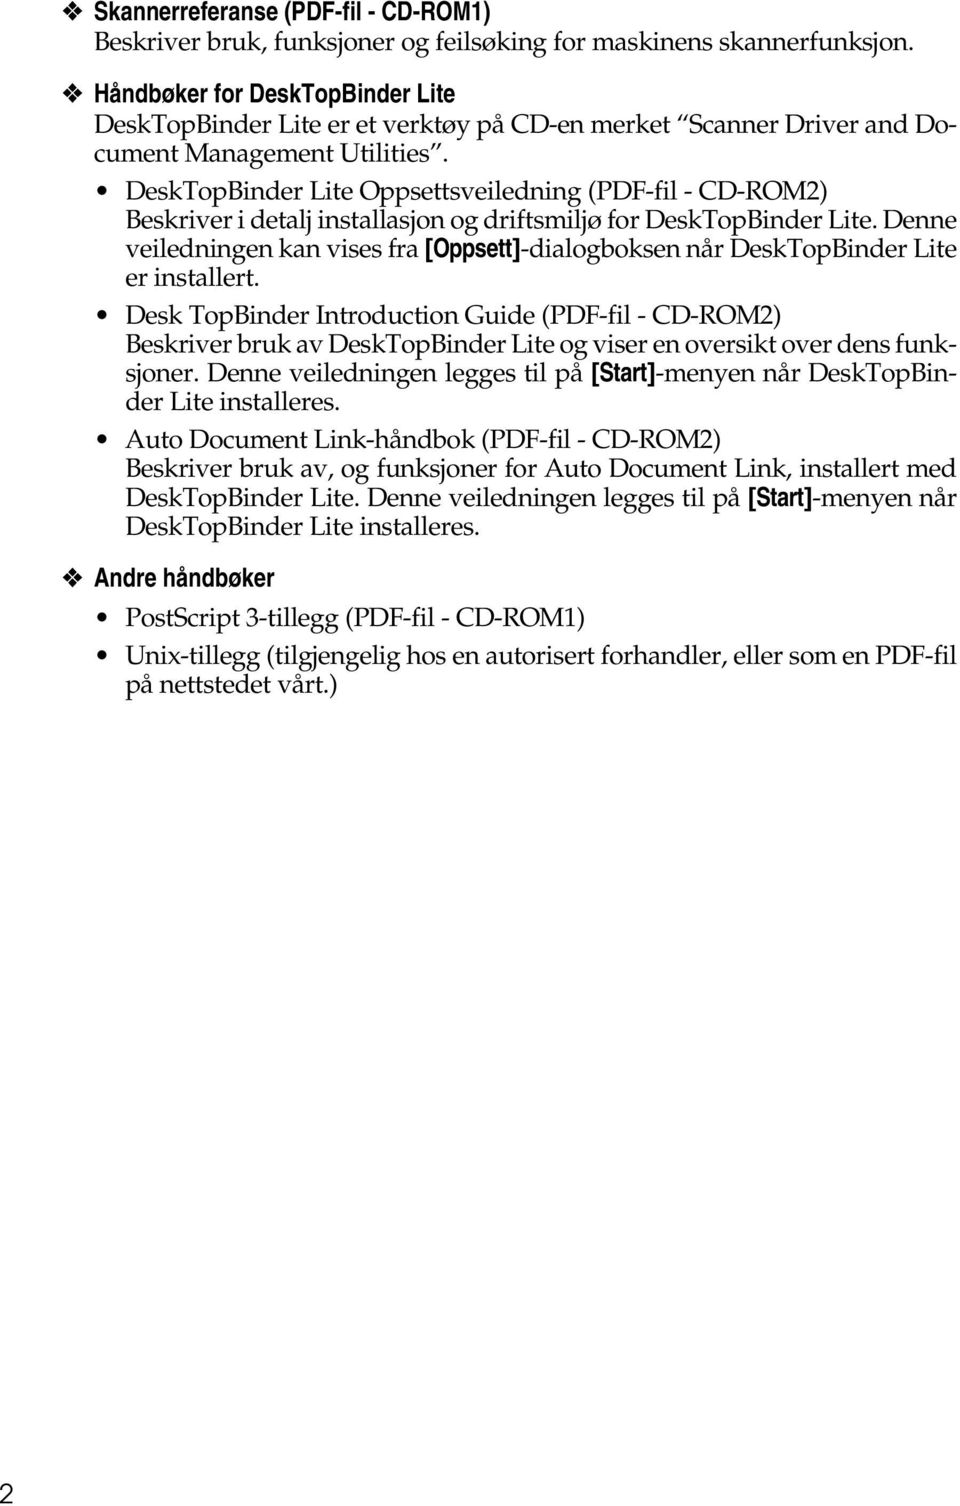 DeskTopBinder Lite Oppsettsveiledning (PDF-fil - CD-ROM2) Beskriver i detalj installasjon og driftsmiljø for DeskTopBinder Lite.